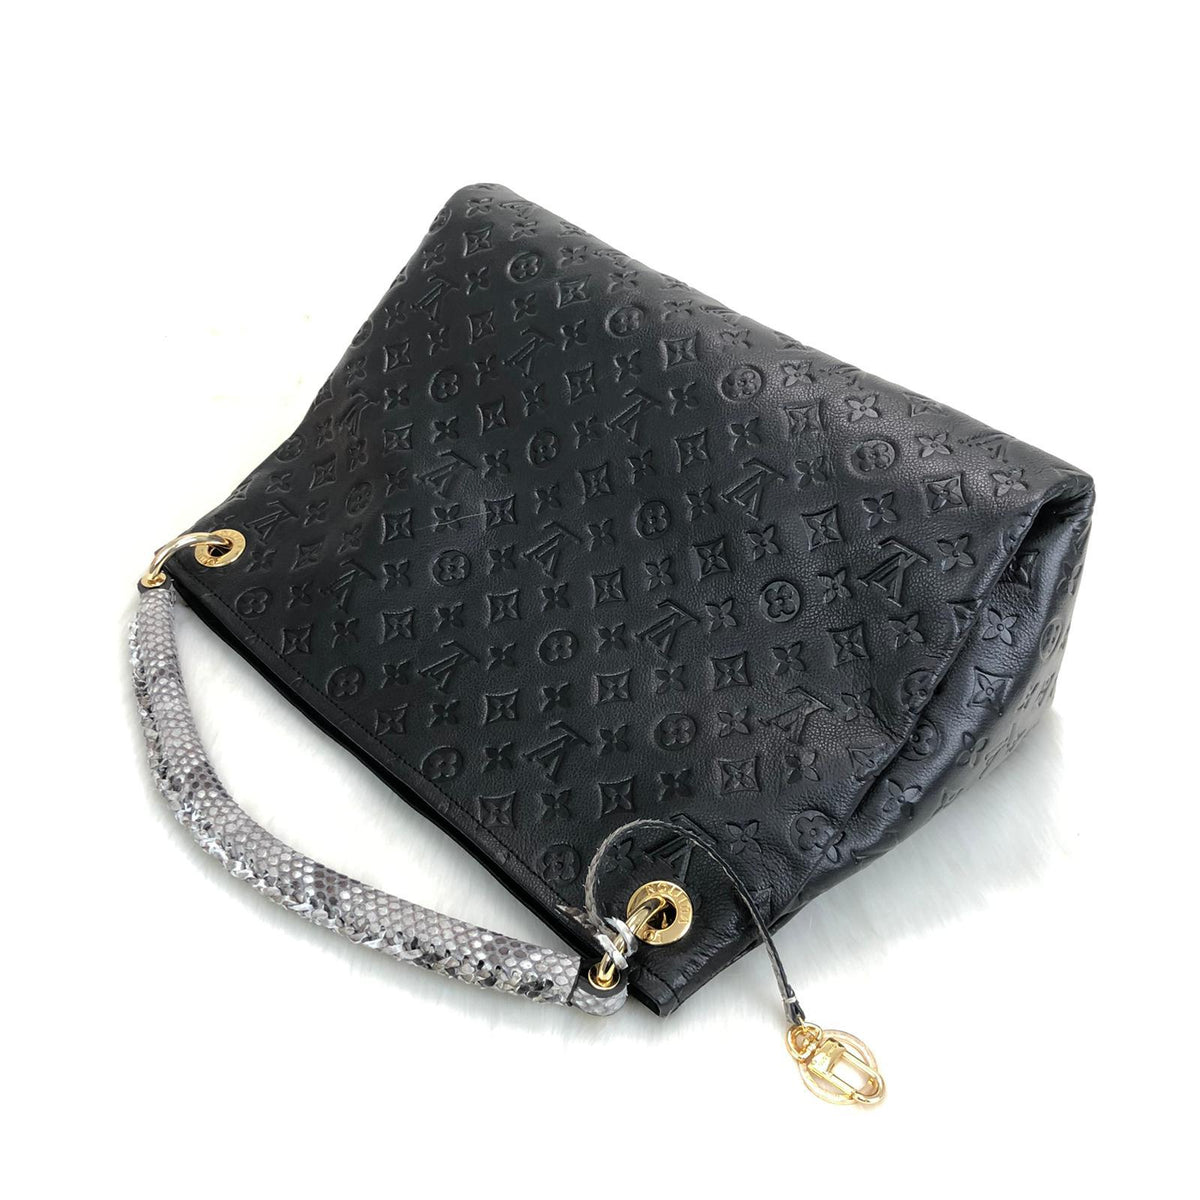 Louis Vuitton Artsy Empreinte-Python Handle – World Leather Design